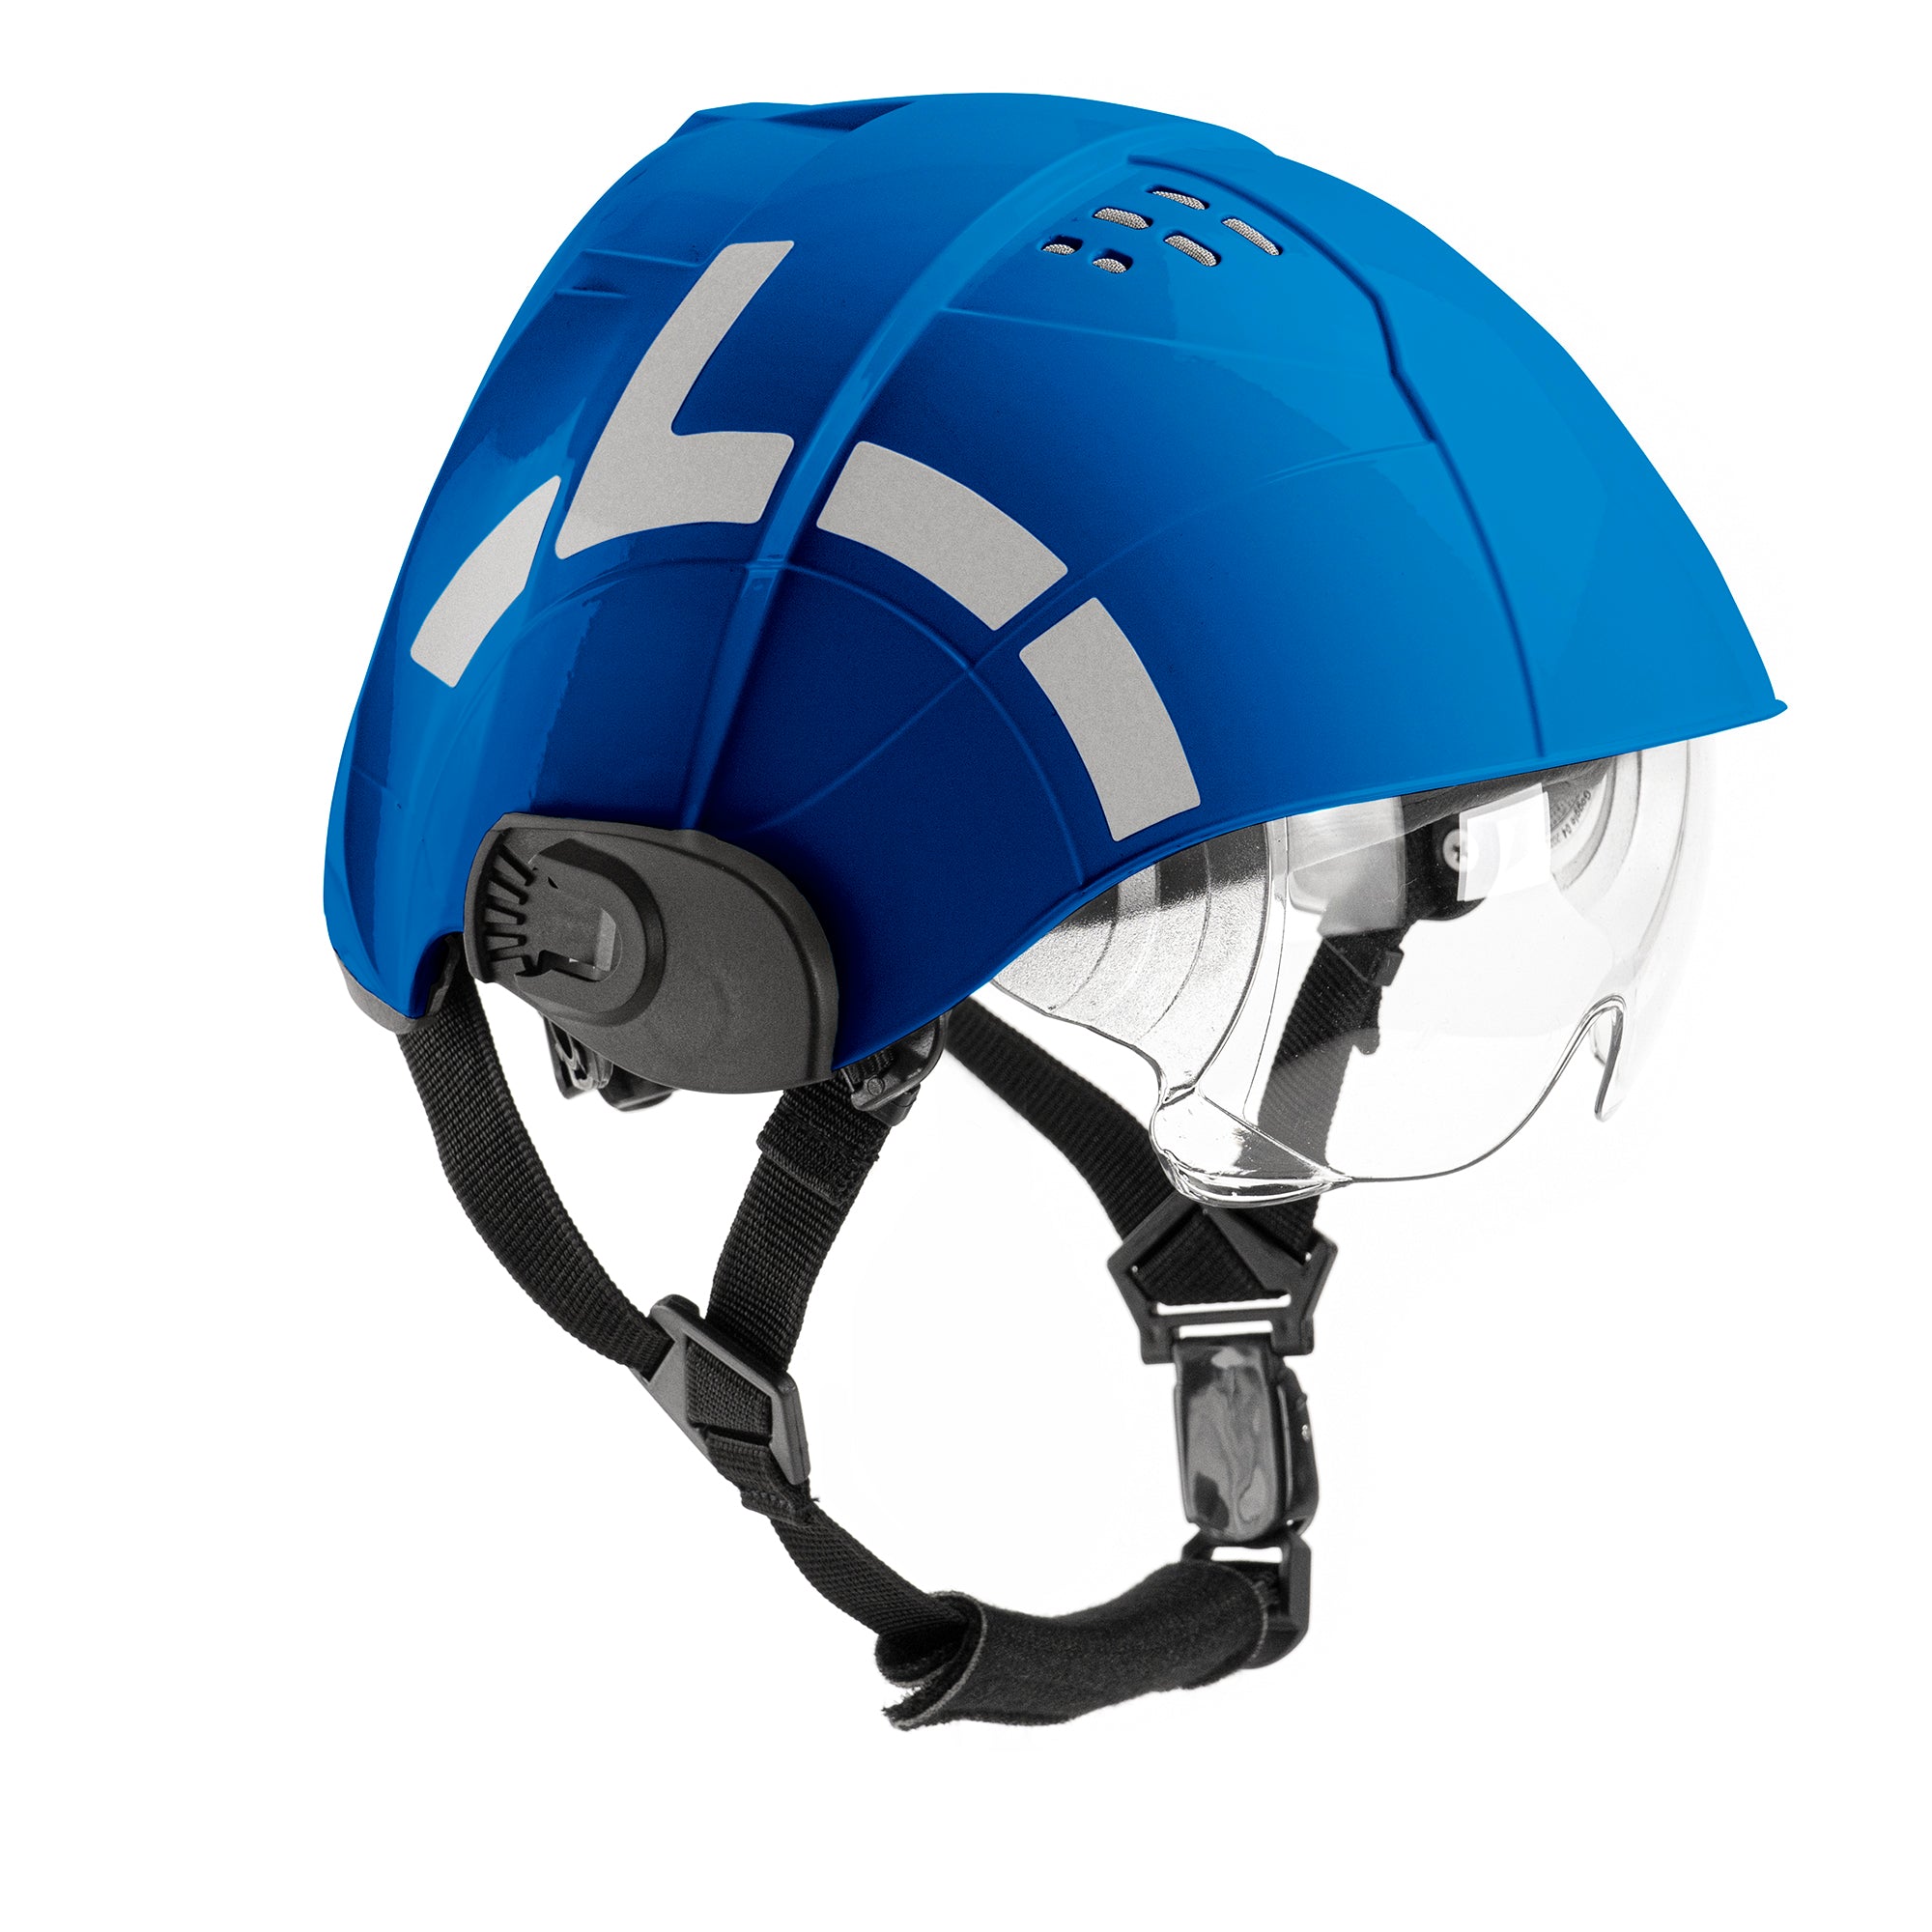 WRS - Technical rescue helmet – WRS International